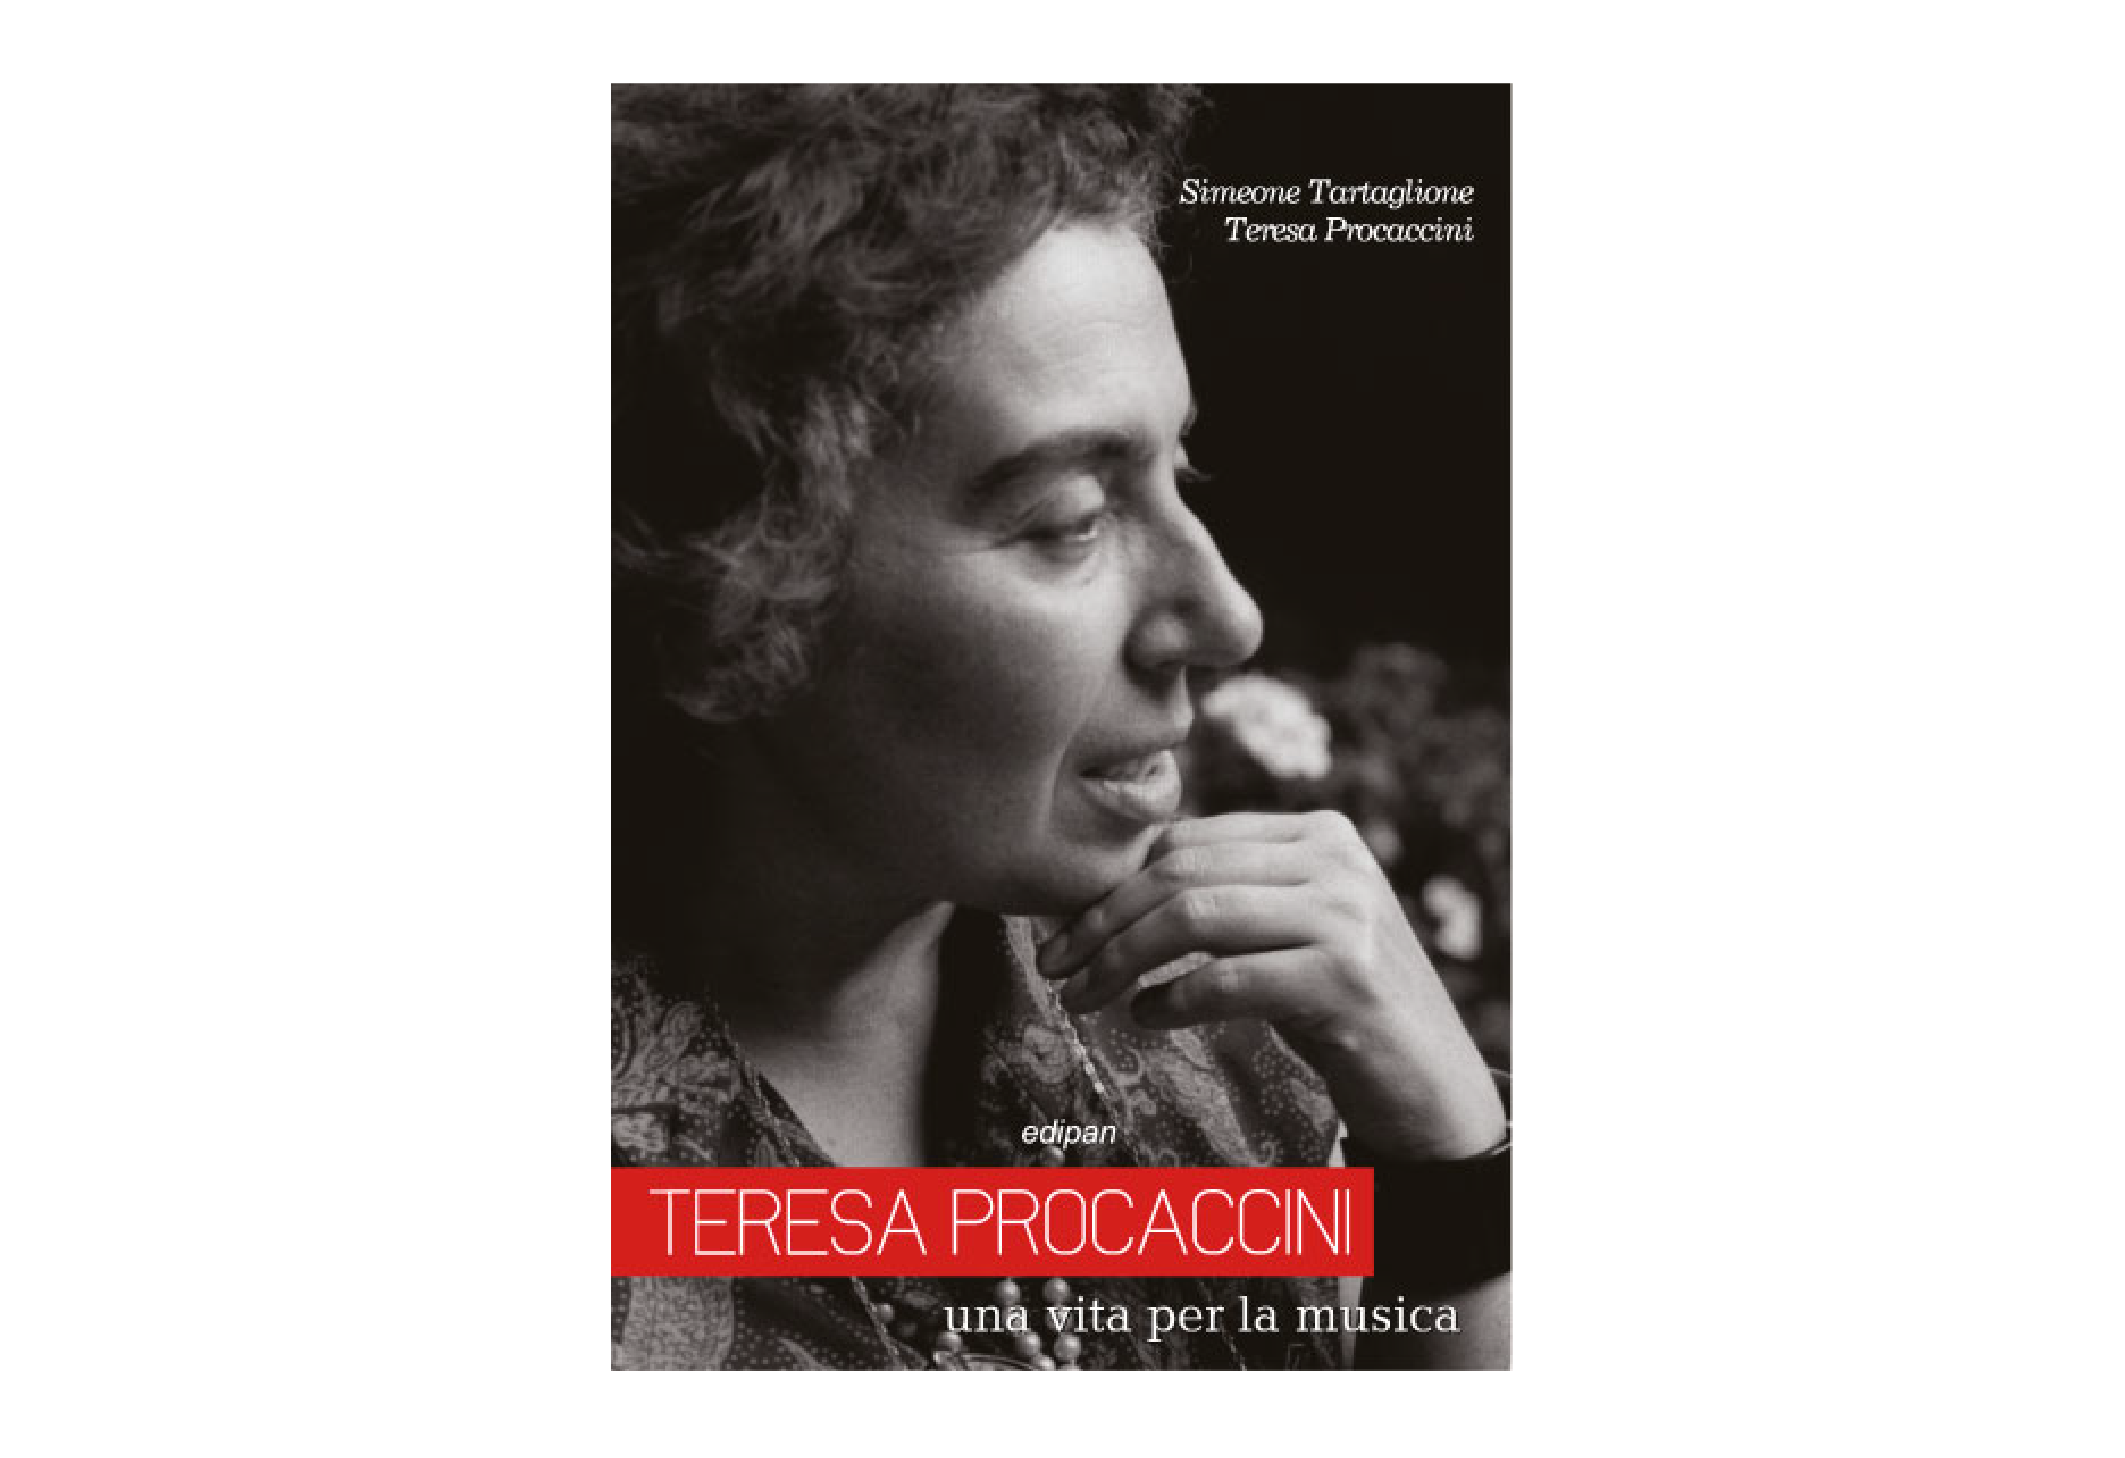 Teresa Procaccini (ph comunicato stampa)